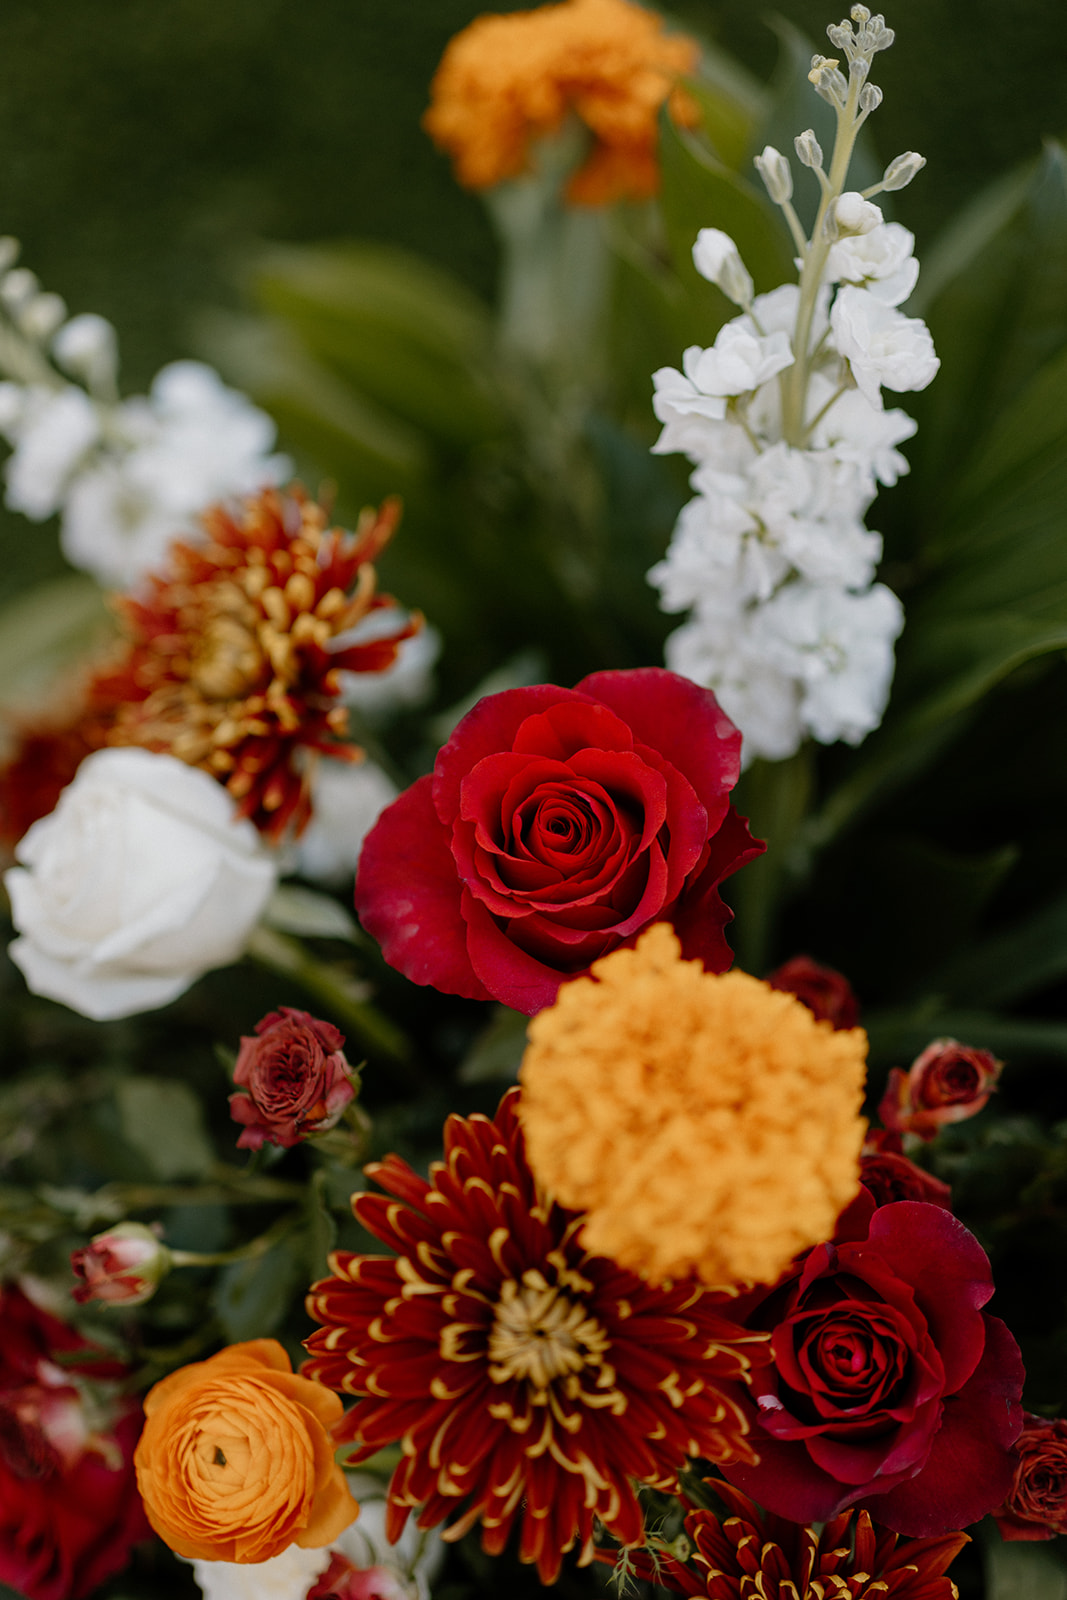 Stunning Flagstaff wedding flowers ready for the dreamy wedding day